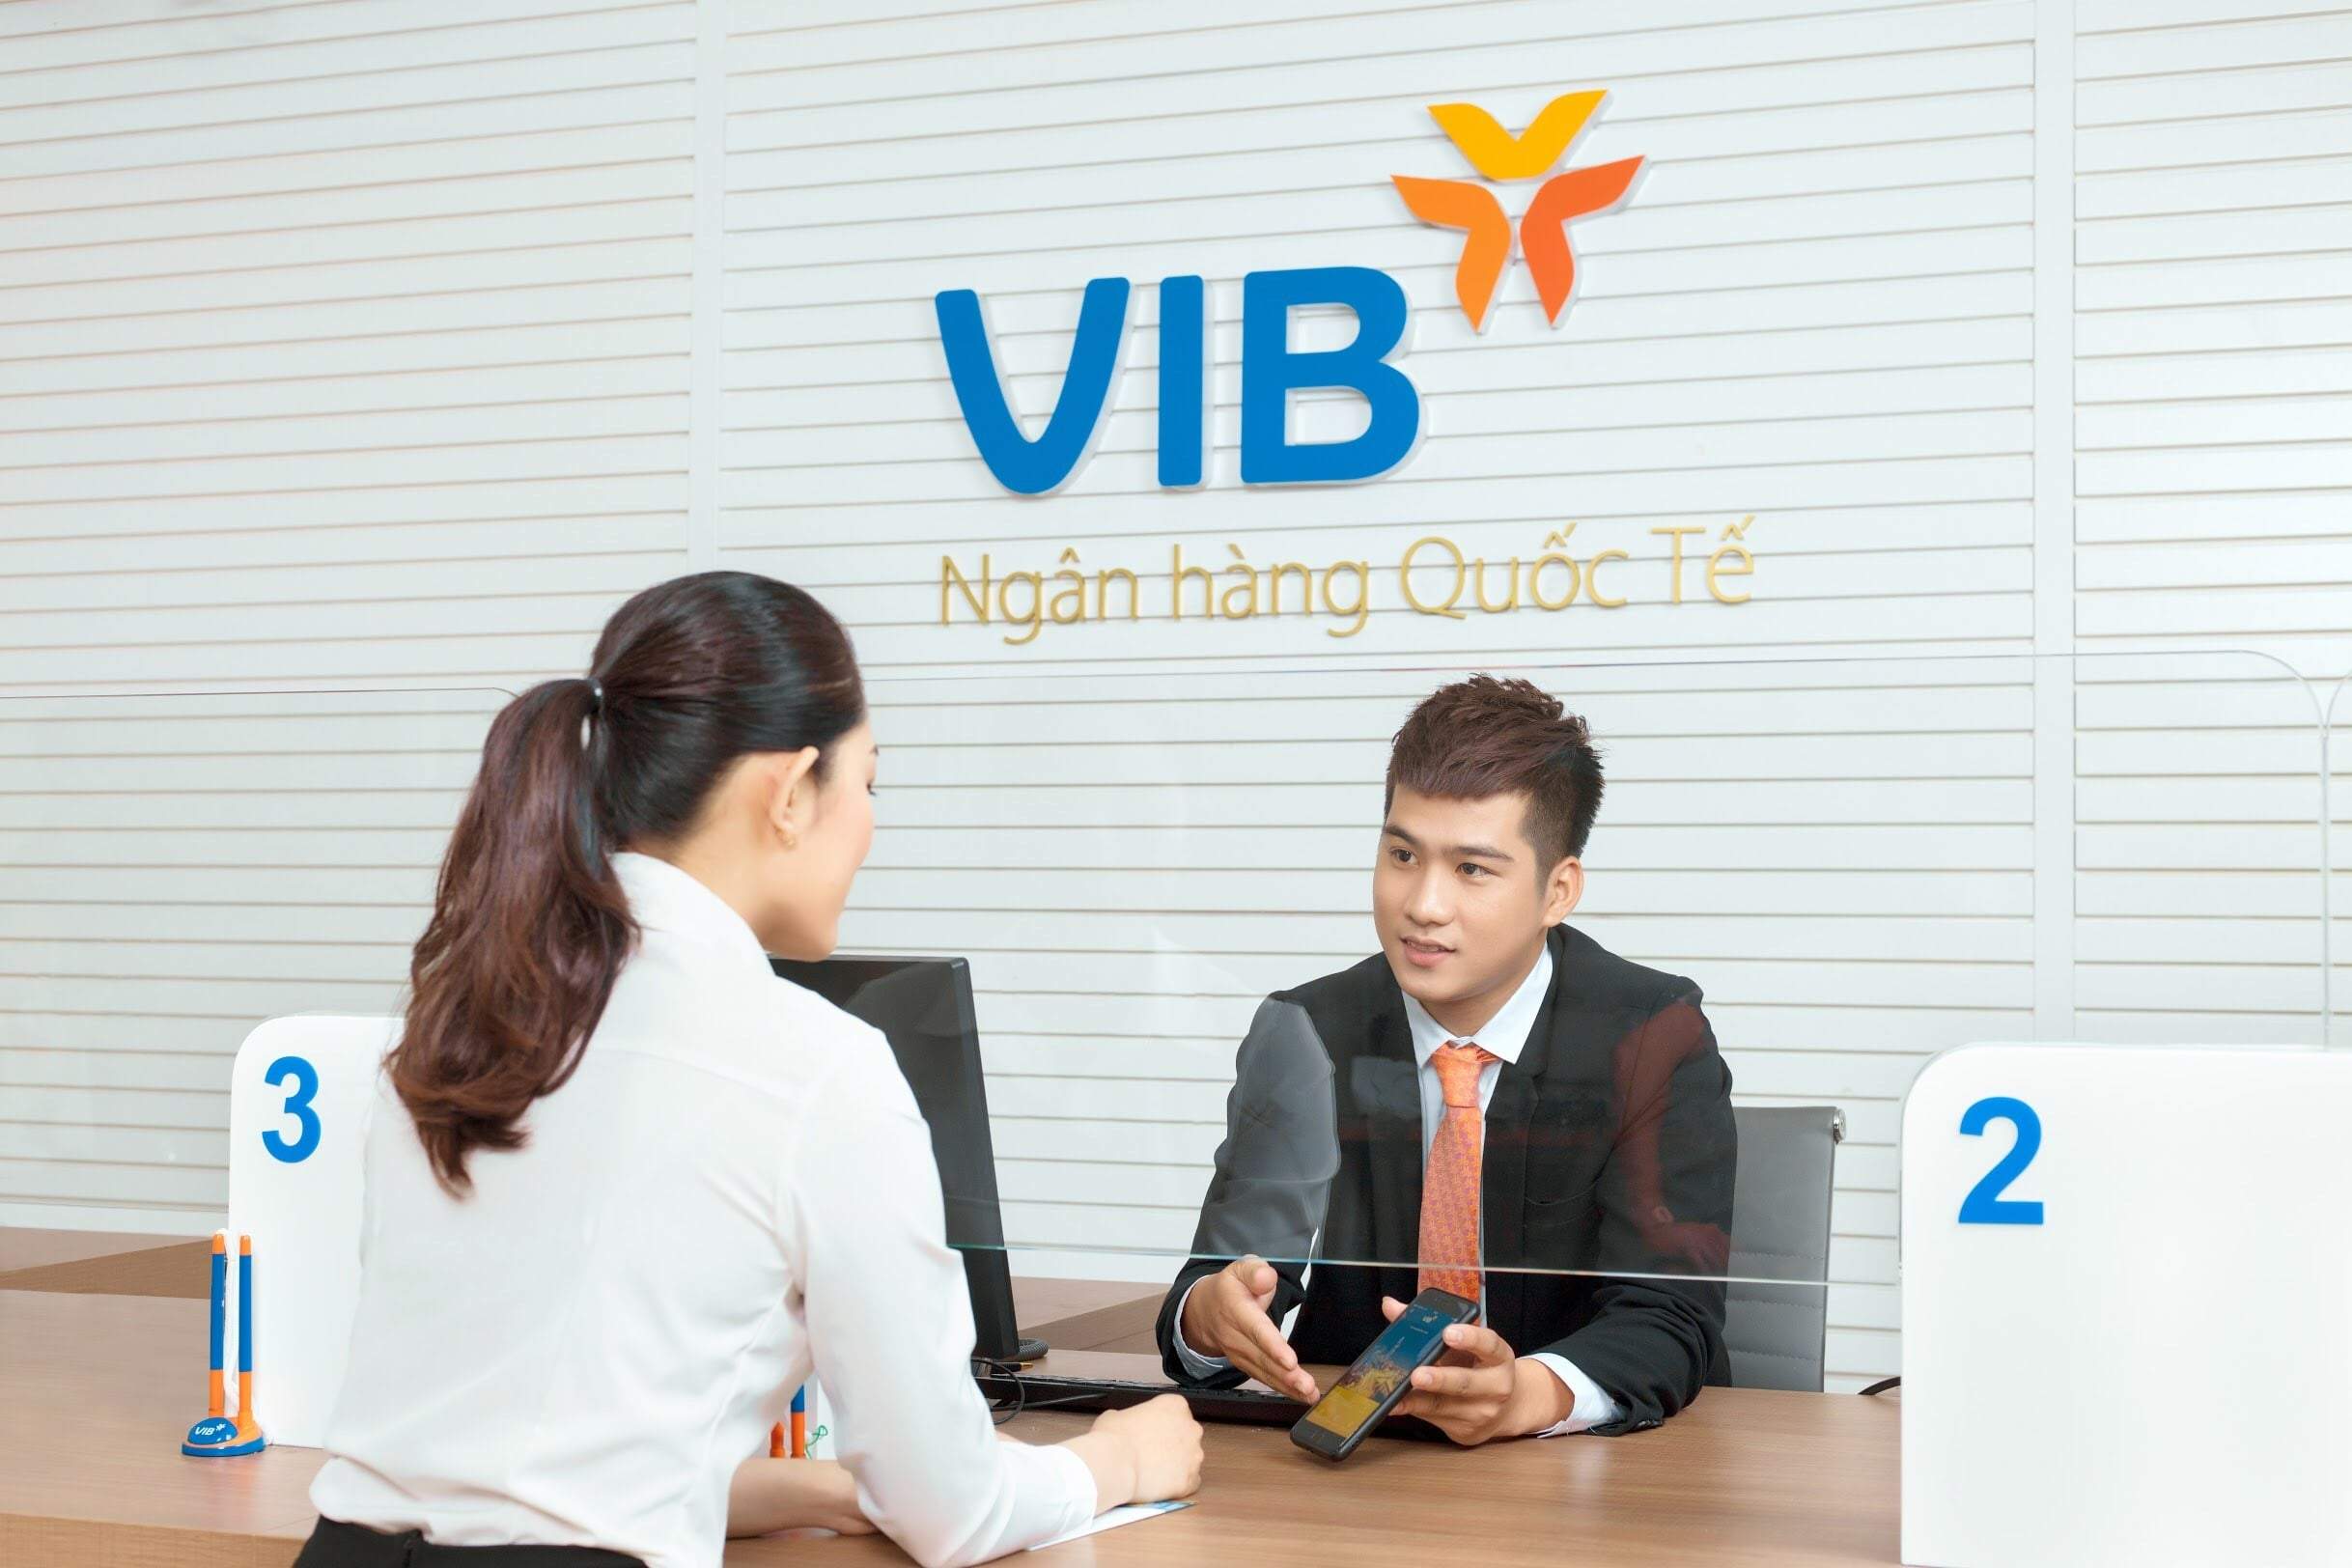 Khách hàng có thể đến ngân hàng VIB để mua bảo hiểm